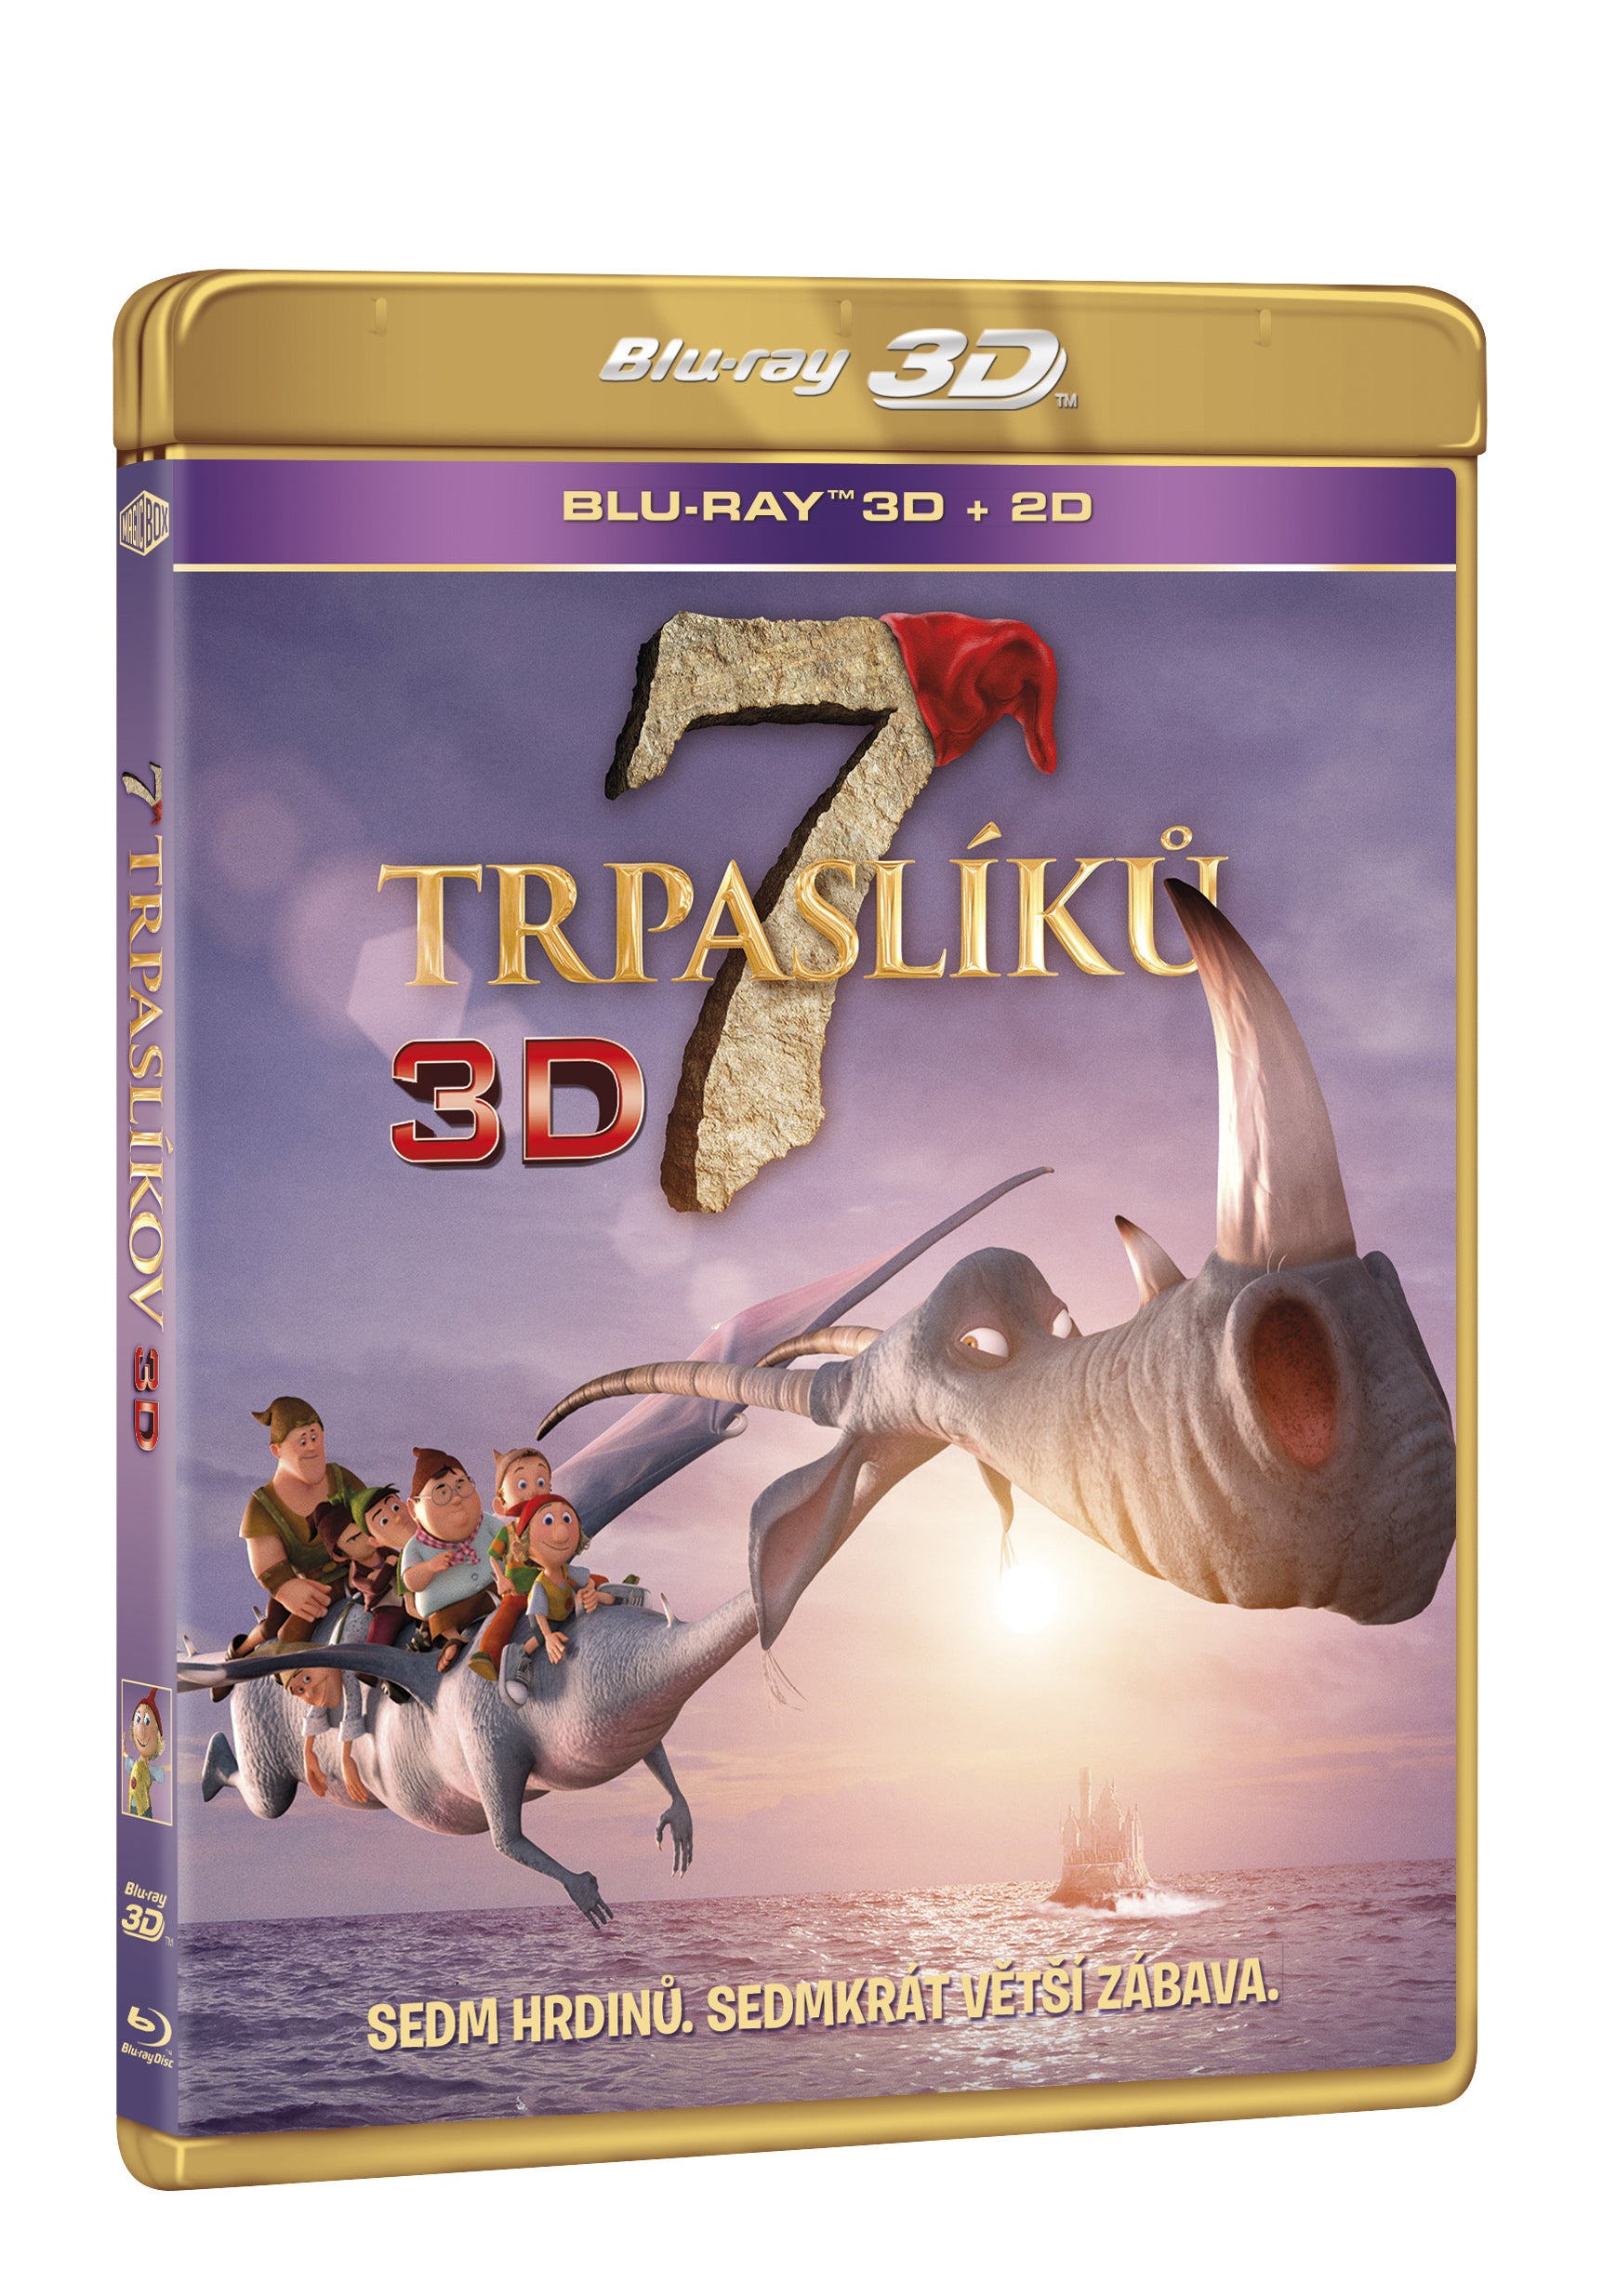 7 trpasliku BD (3D+2D) / The 7th Dwarf - Czech version